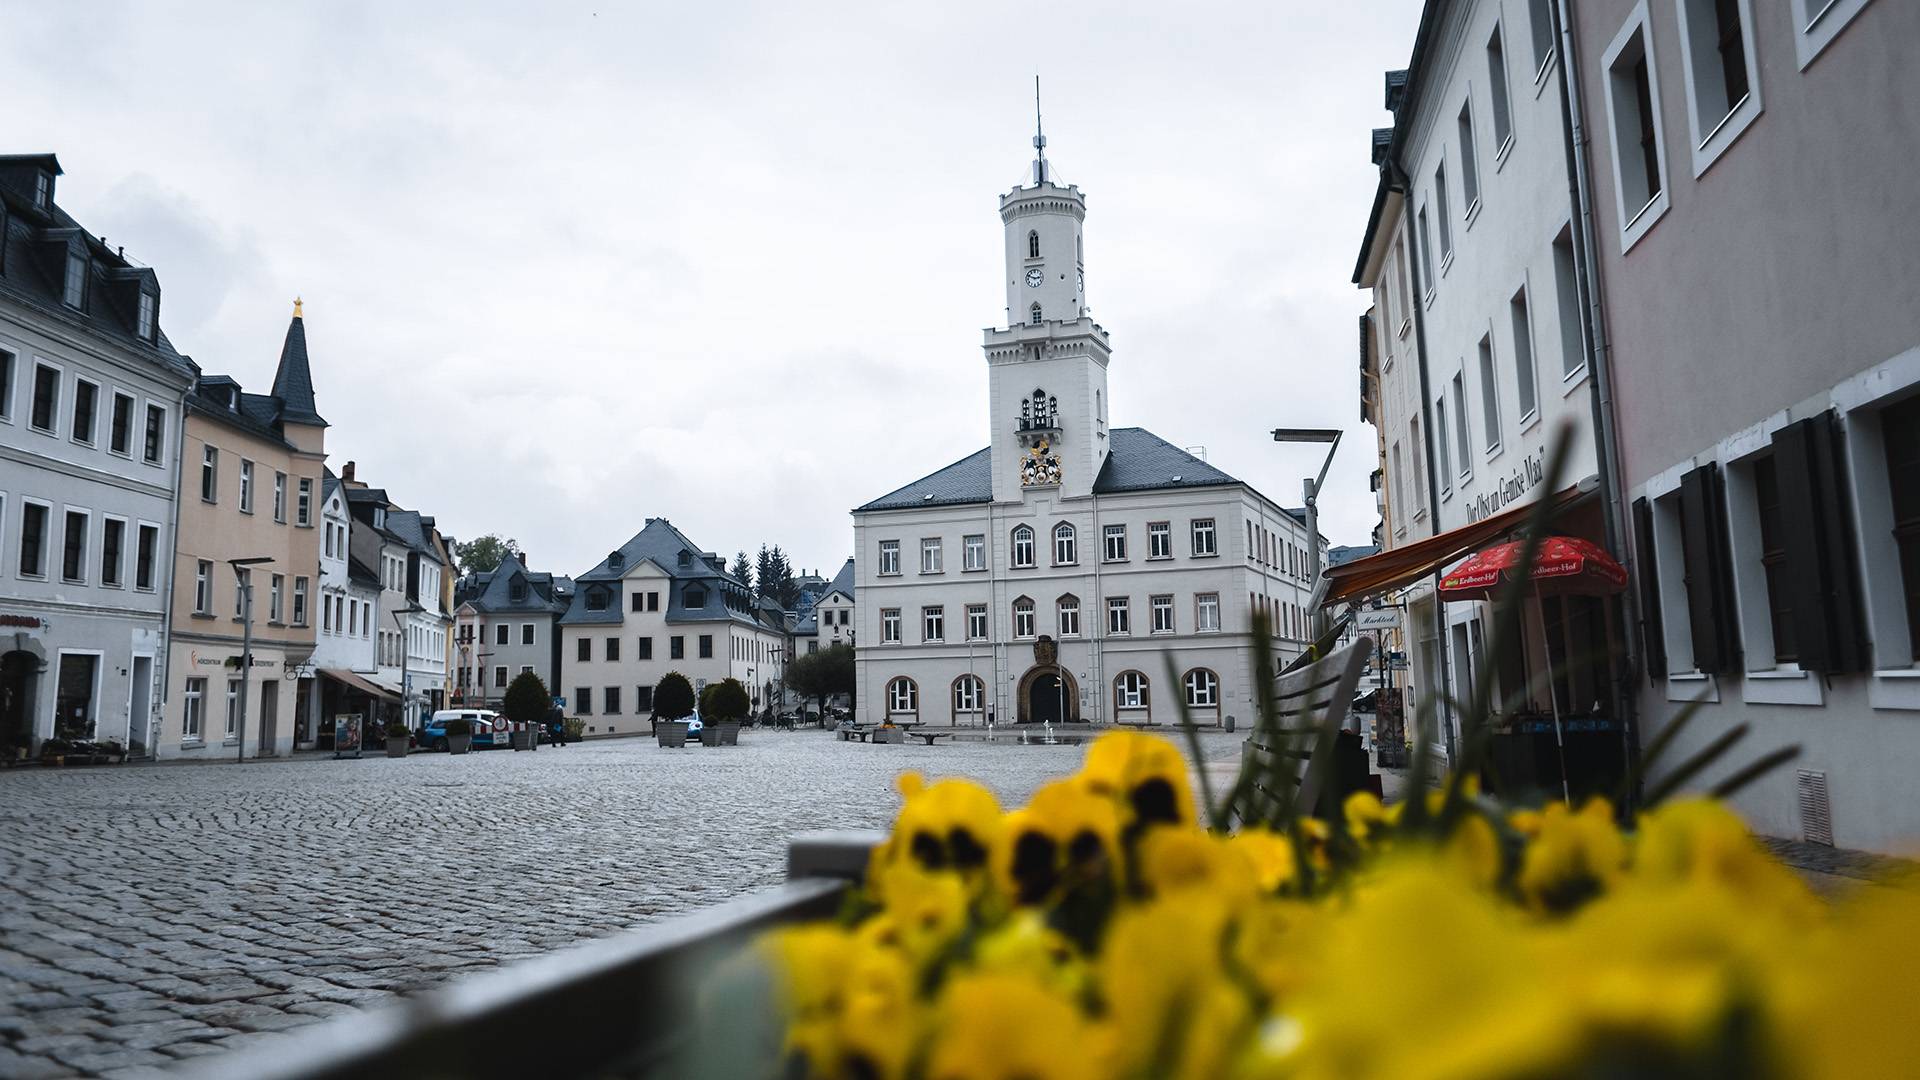 Das Foto zeigt den Marktplatz in Schneeberg. Links und recht befinden sich Gebäude mit Geschäften und Lokalitäten. Frontal ist das Rathaus zu sehen.